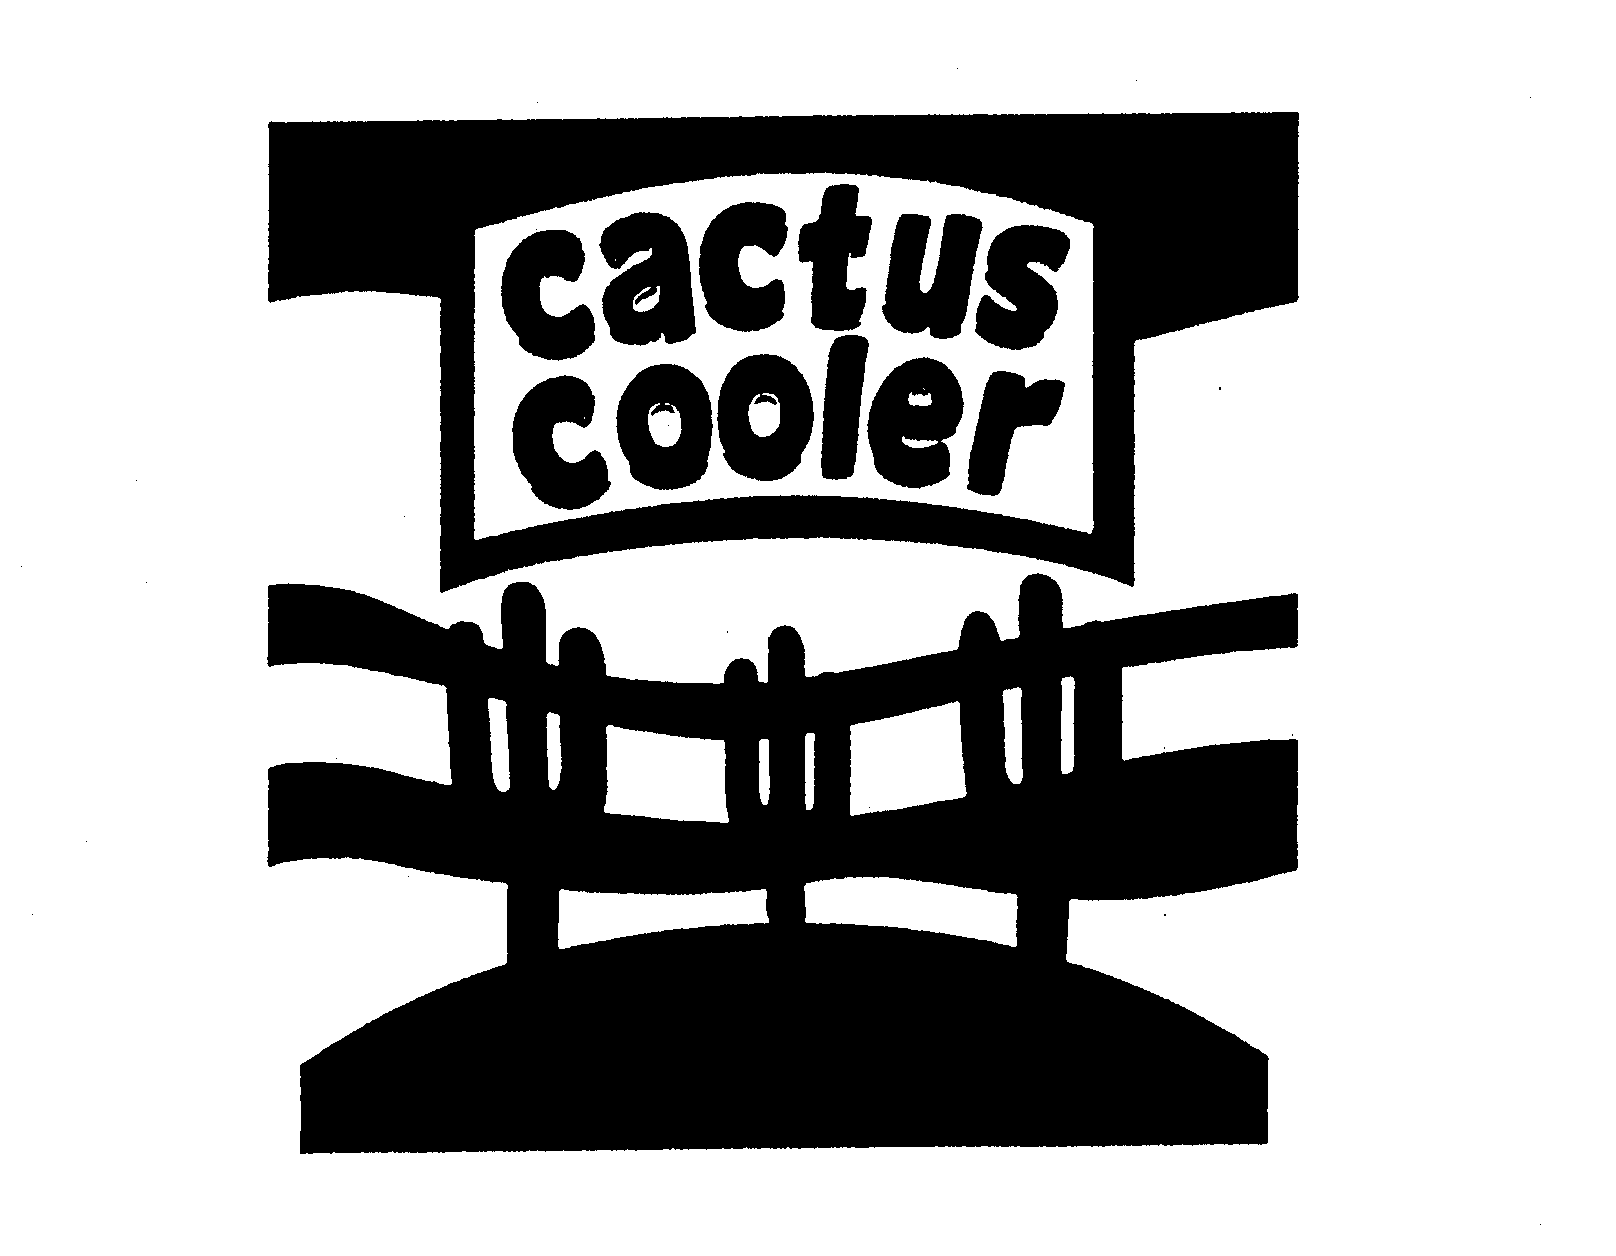  CACTUS COOLER